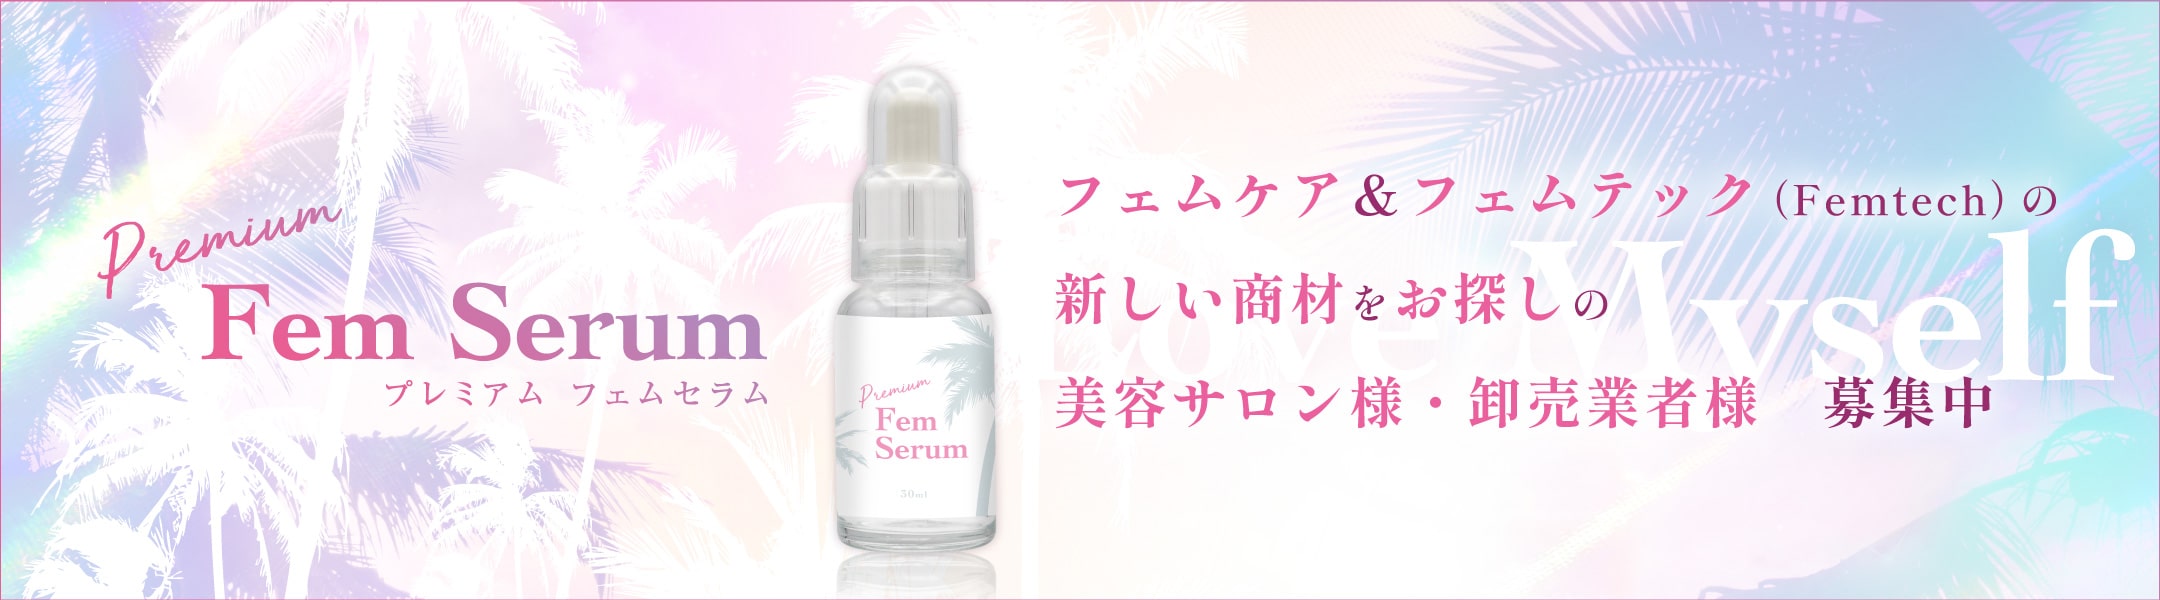 Premium Fem Serum プレミアム フェムセラム